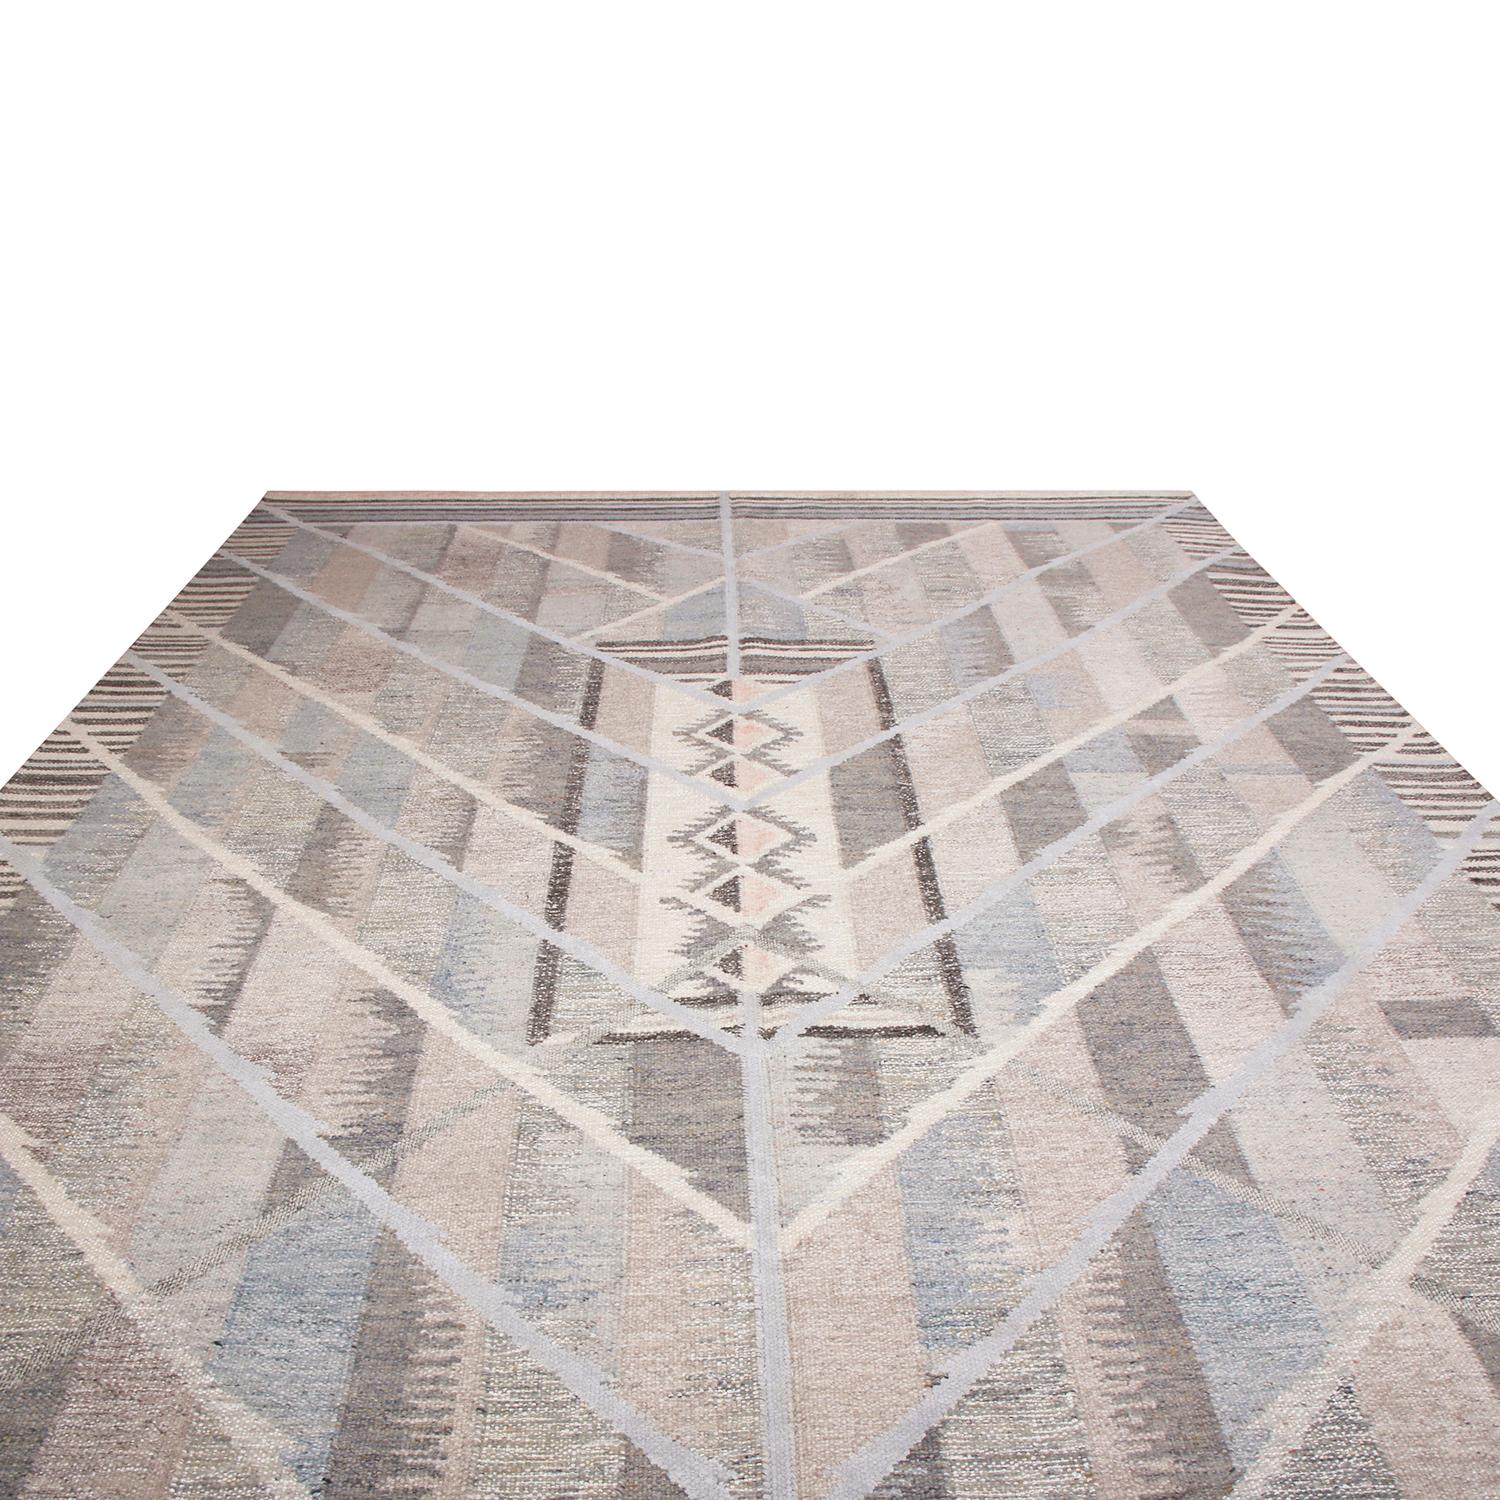 Le tapis de style suédois tissé à la main de Rug & Kilim fait partie des derniers ajouts à la collection scandinave en laine tissée à plat, offrant notre approche unique de la géométrie à grande échelle aux couleurs vintage excitantes comme celles